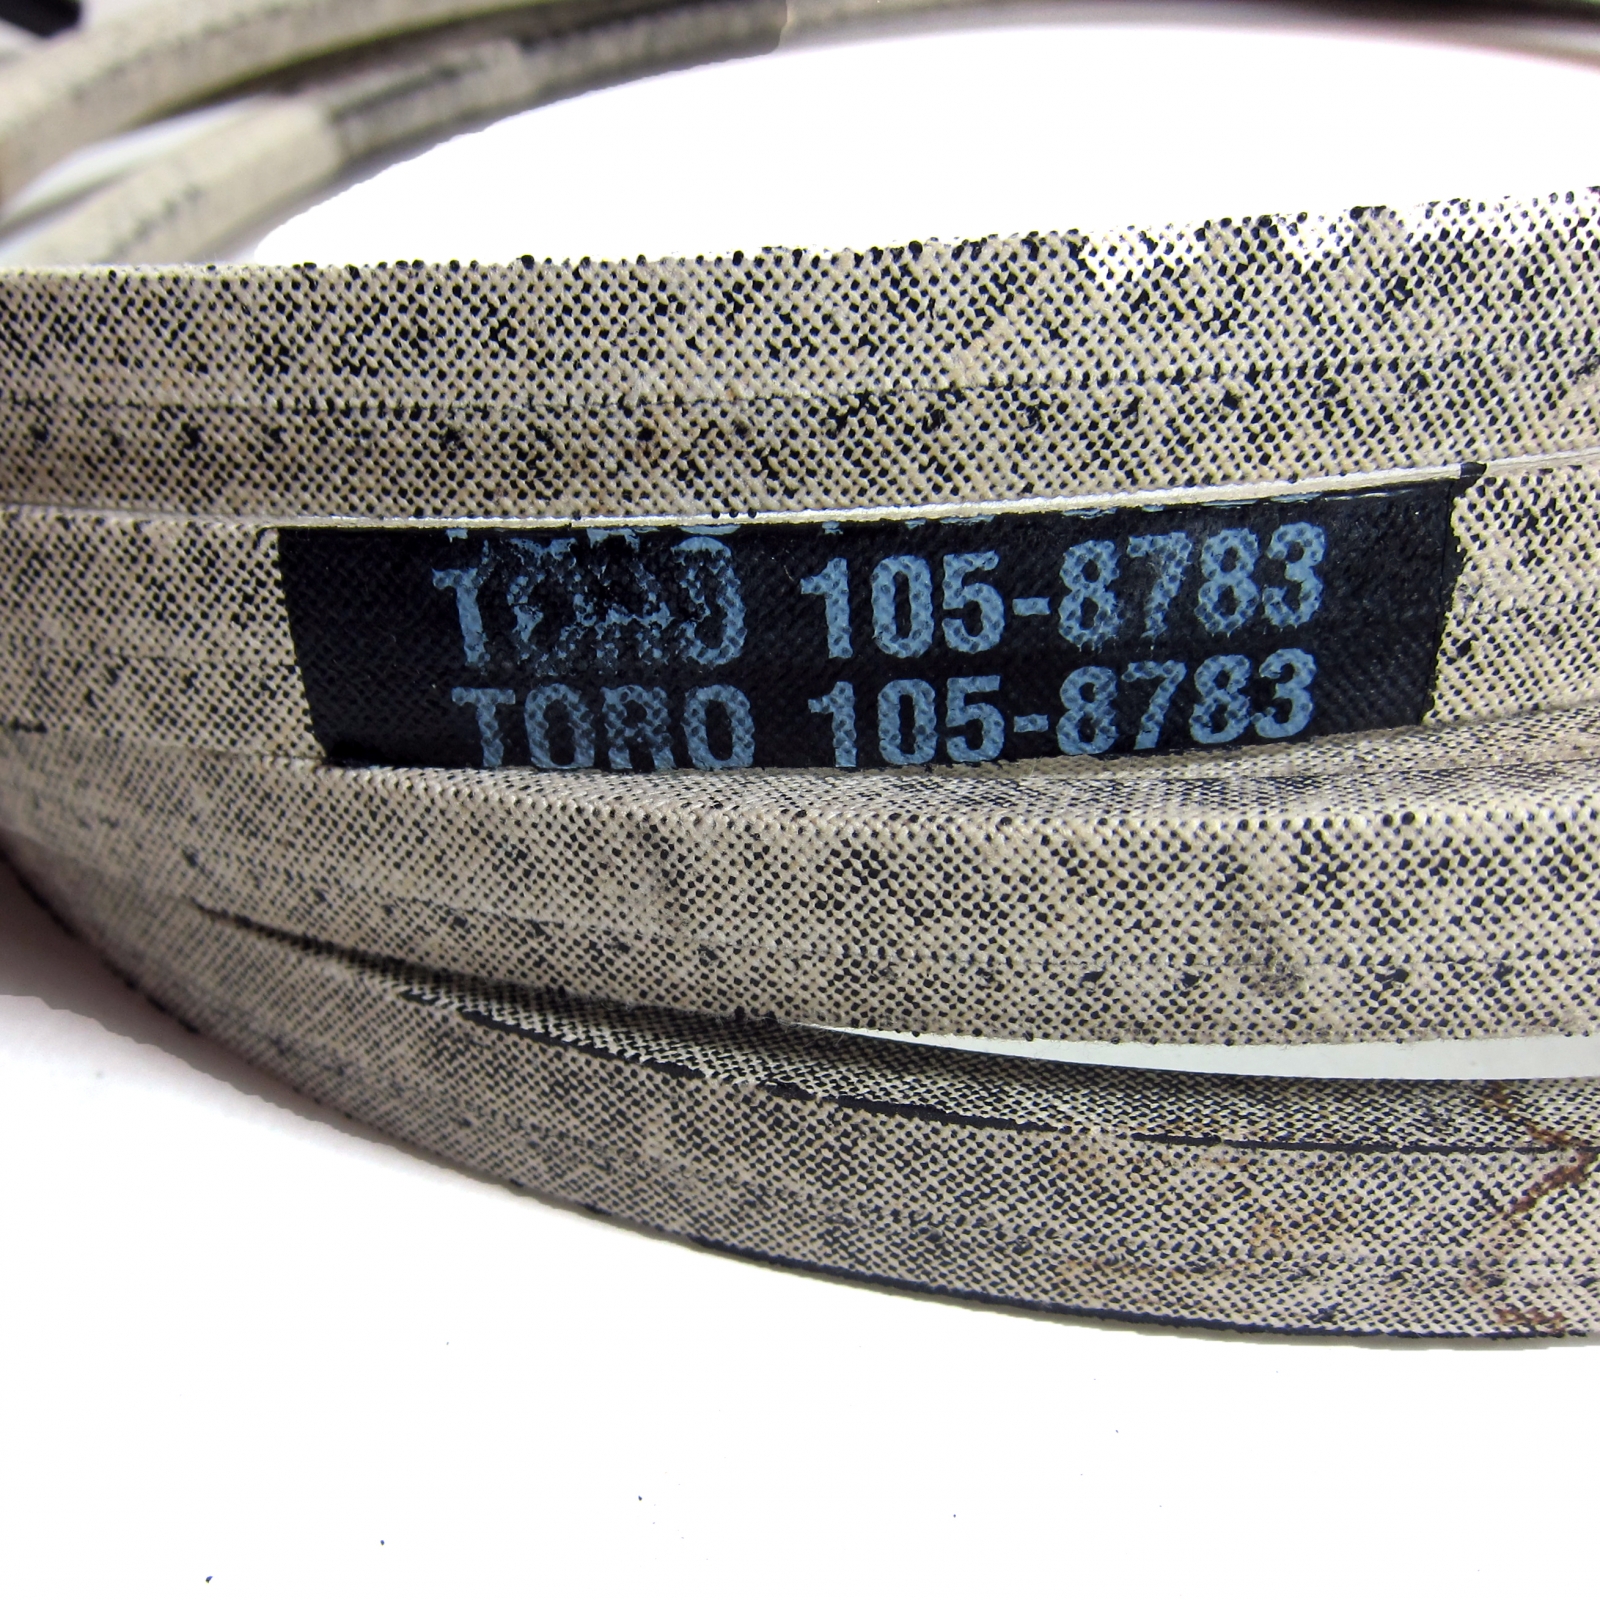 Tadamark Replacement Deck Belt for Toro 105-8783 108-4071 Z Master Z500 Z528 Z553 Z555 Z557 Z558 Z560 Z587L and Z588E with 60 Deck 5/8x242 